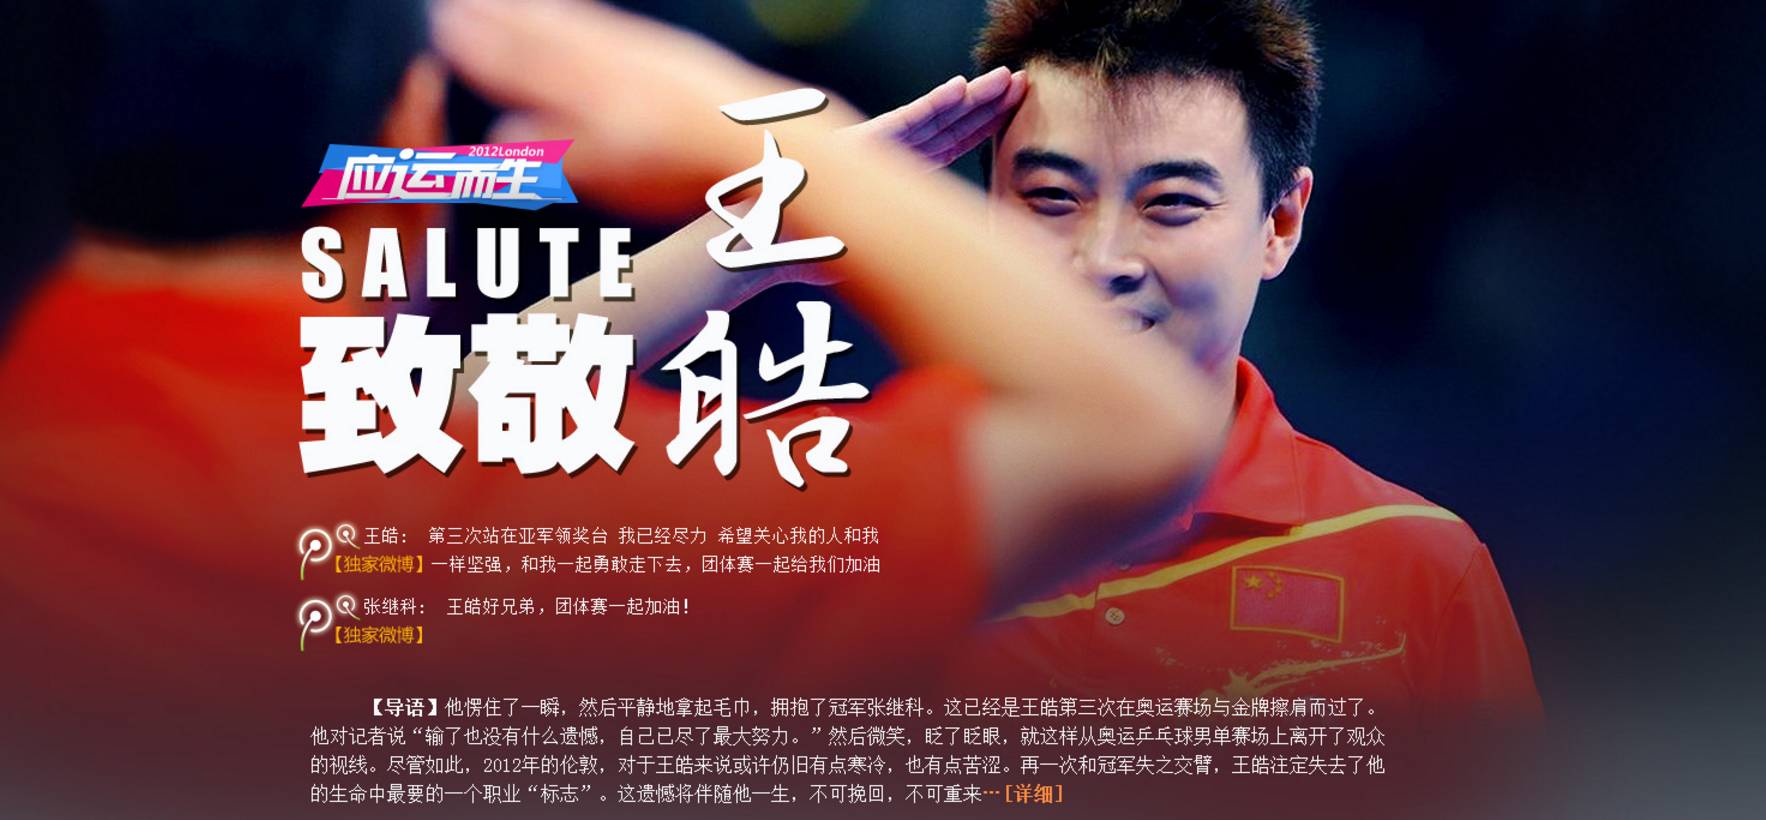 乒乓冠军王皓发了一条微博惊动了半个国胖圈